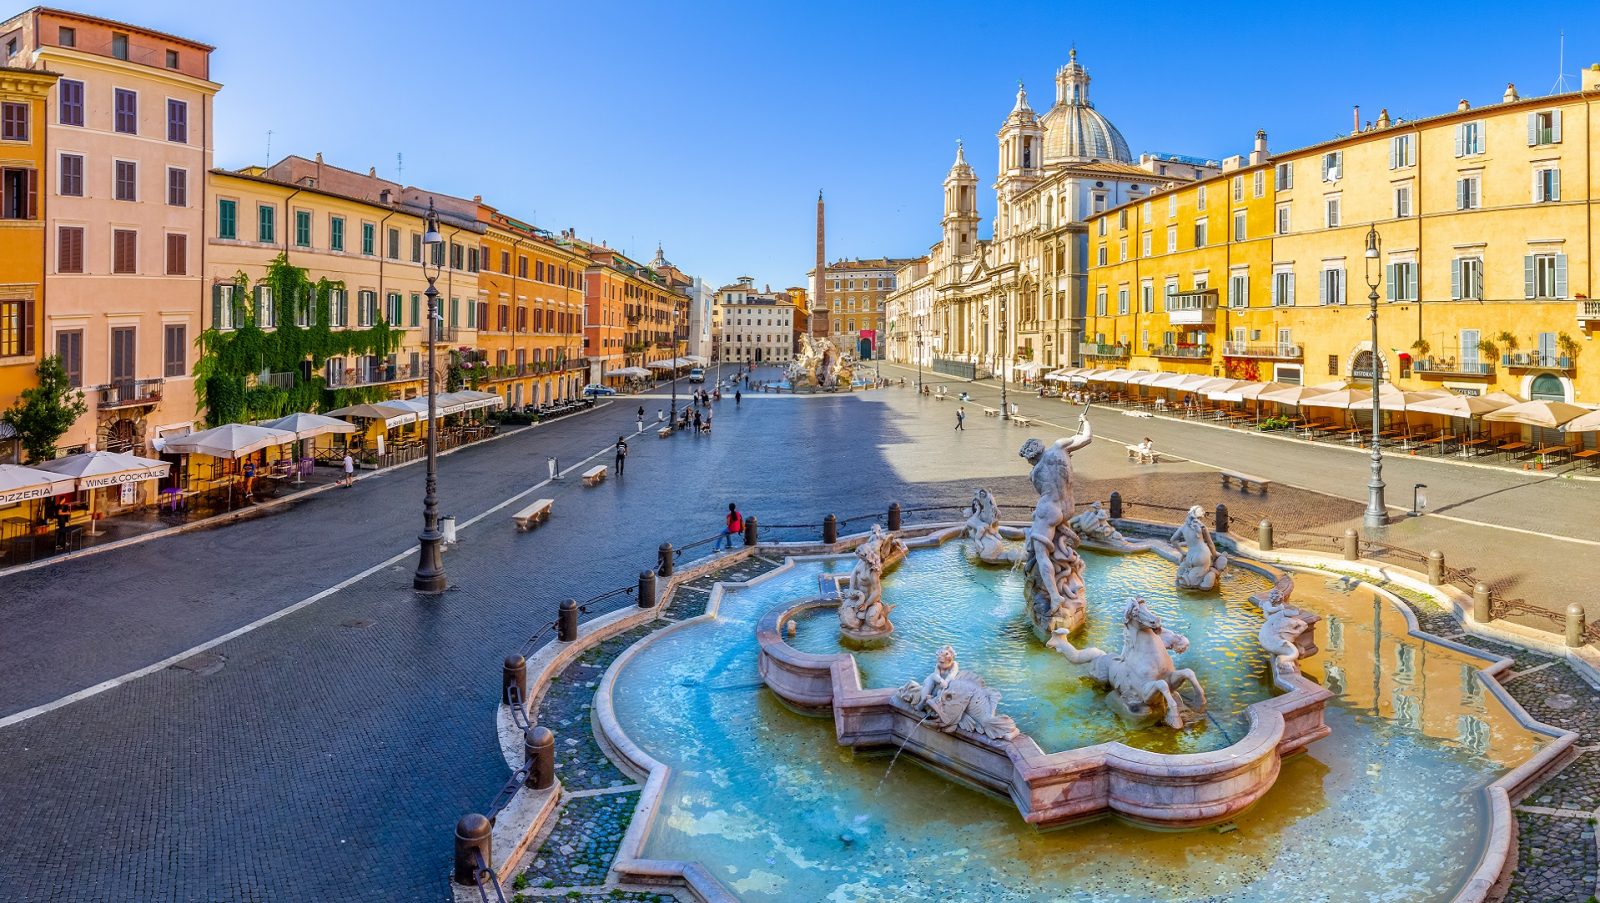 Widok na Piazza Navona z fontannami i zabytkowymi budynkami w Rzymie